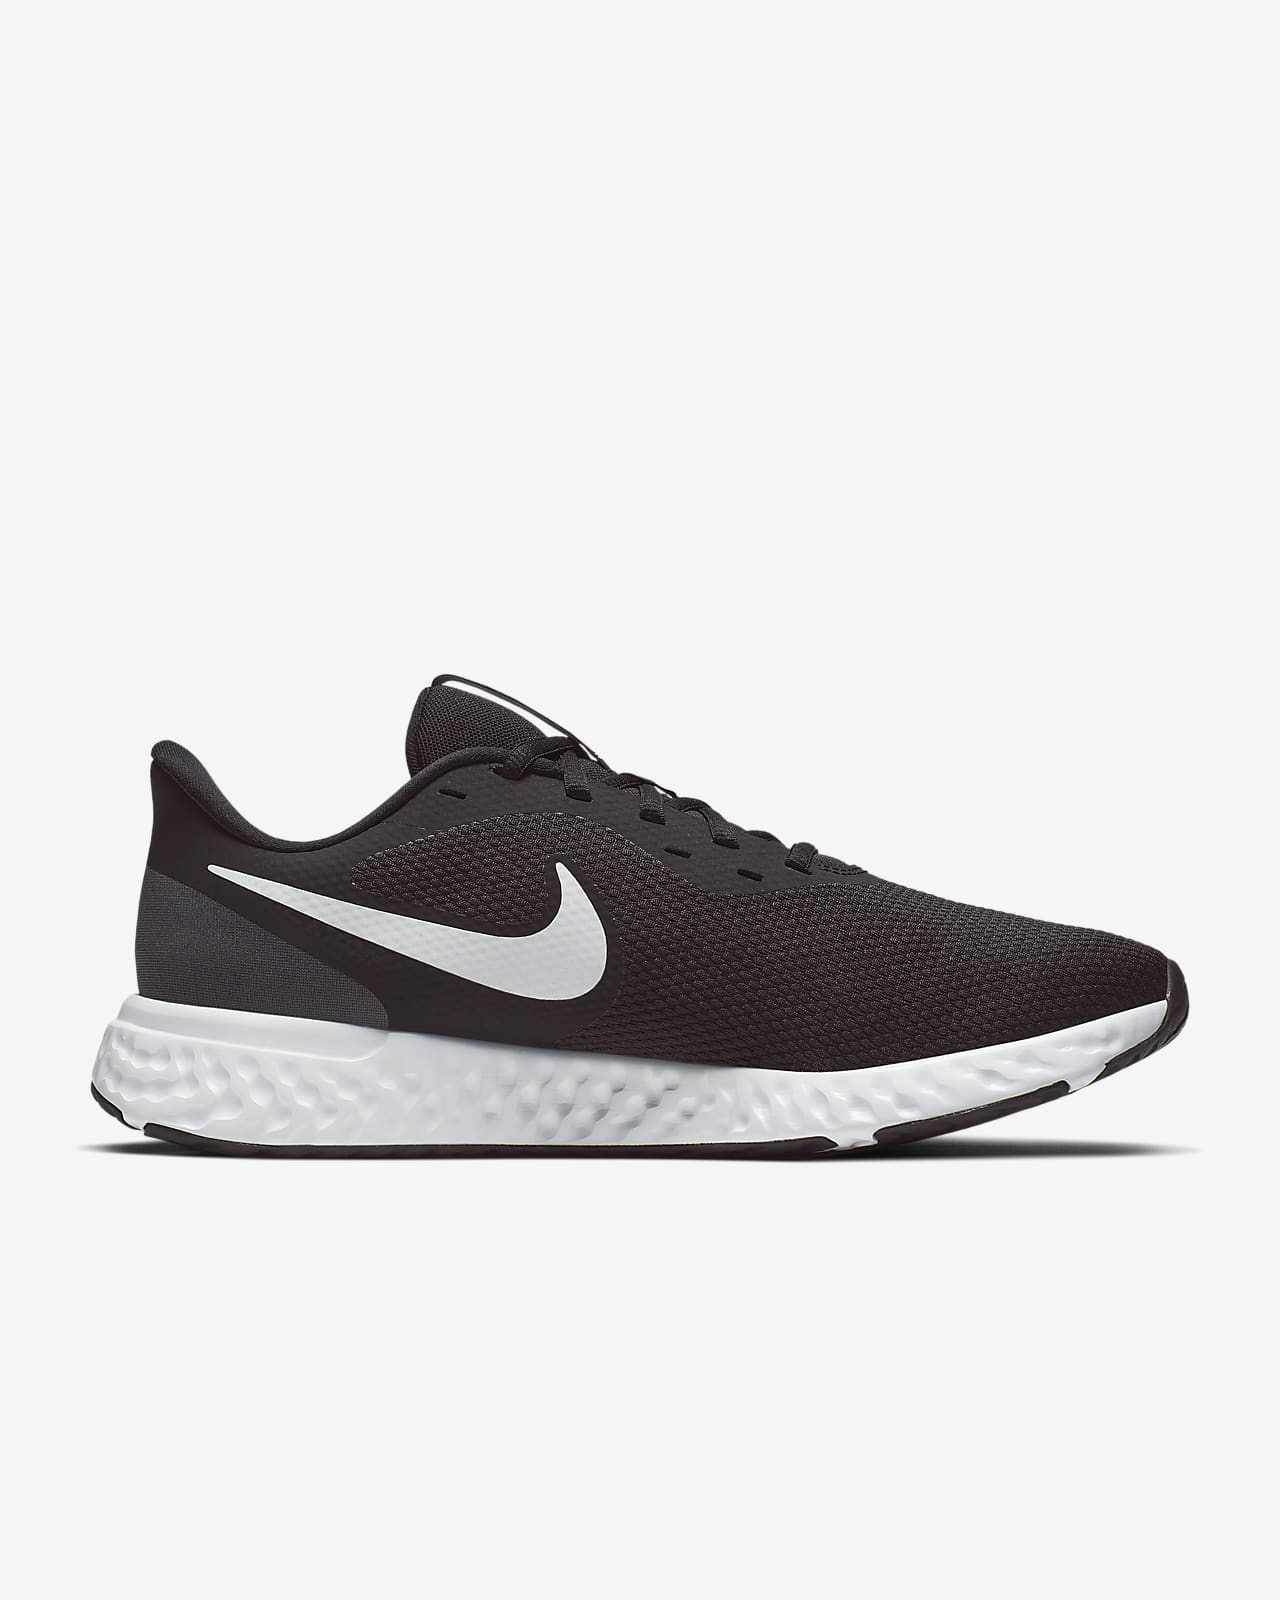 Nike Men's Revolution 5 Running Shoes, Black